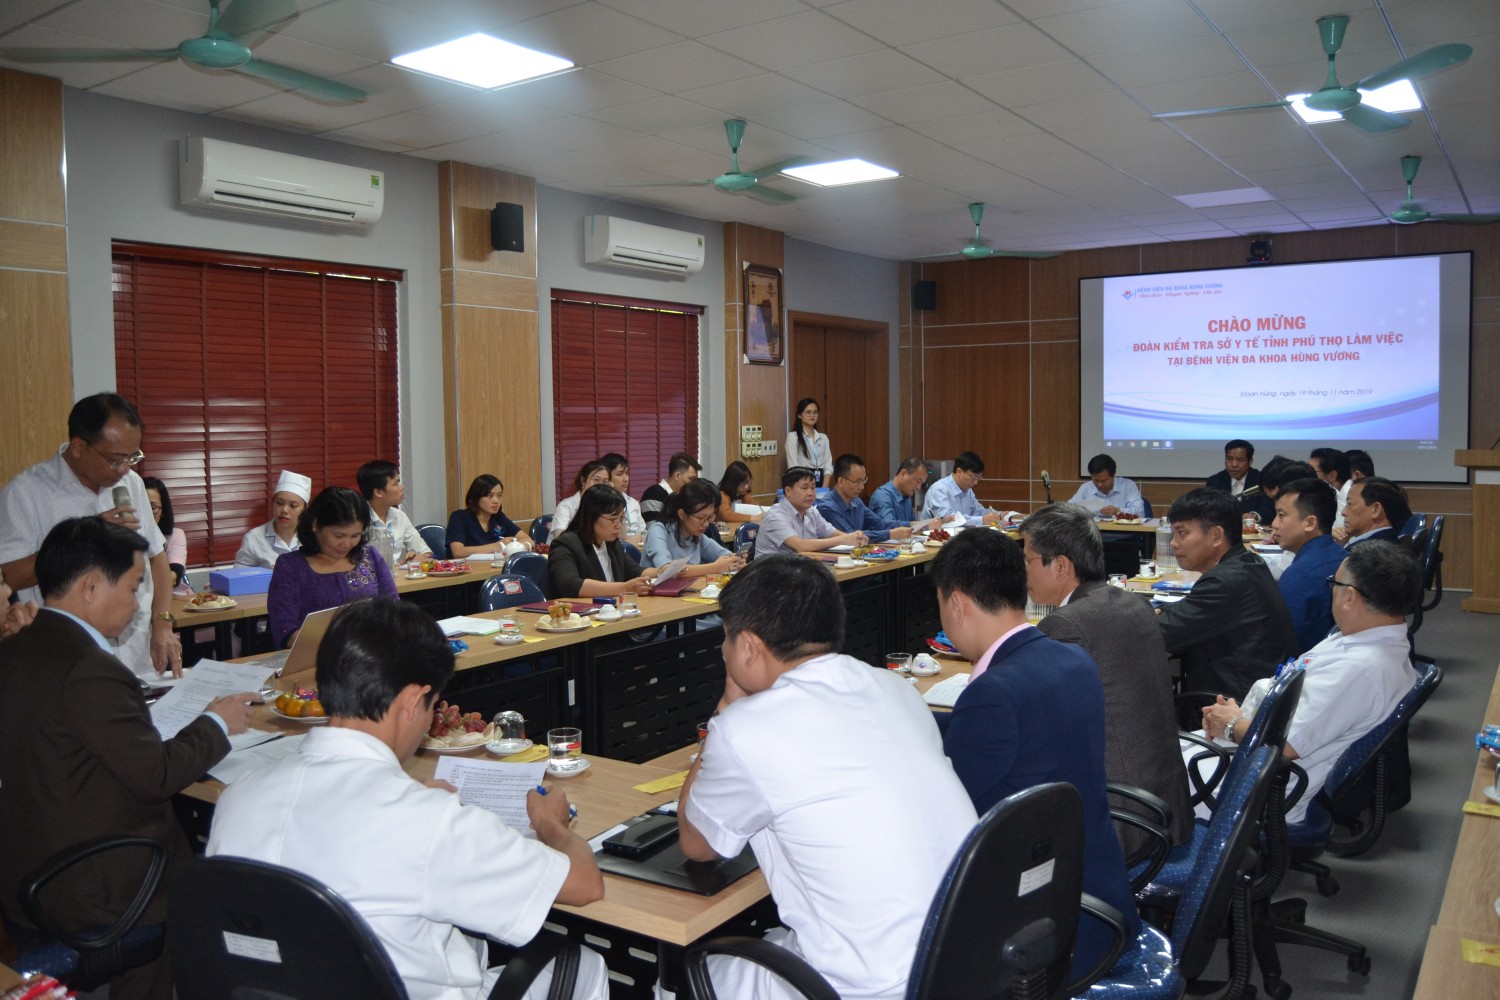 Chào mừng đoàn kiểm tra Sở Y tế Tỉnh Phú thọ về đánh giá chất lượng Bệnh viện năm 2019.